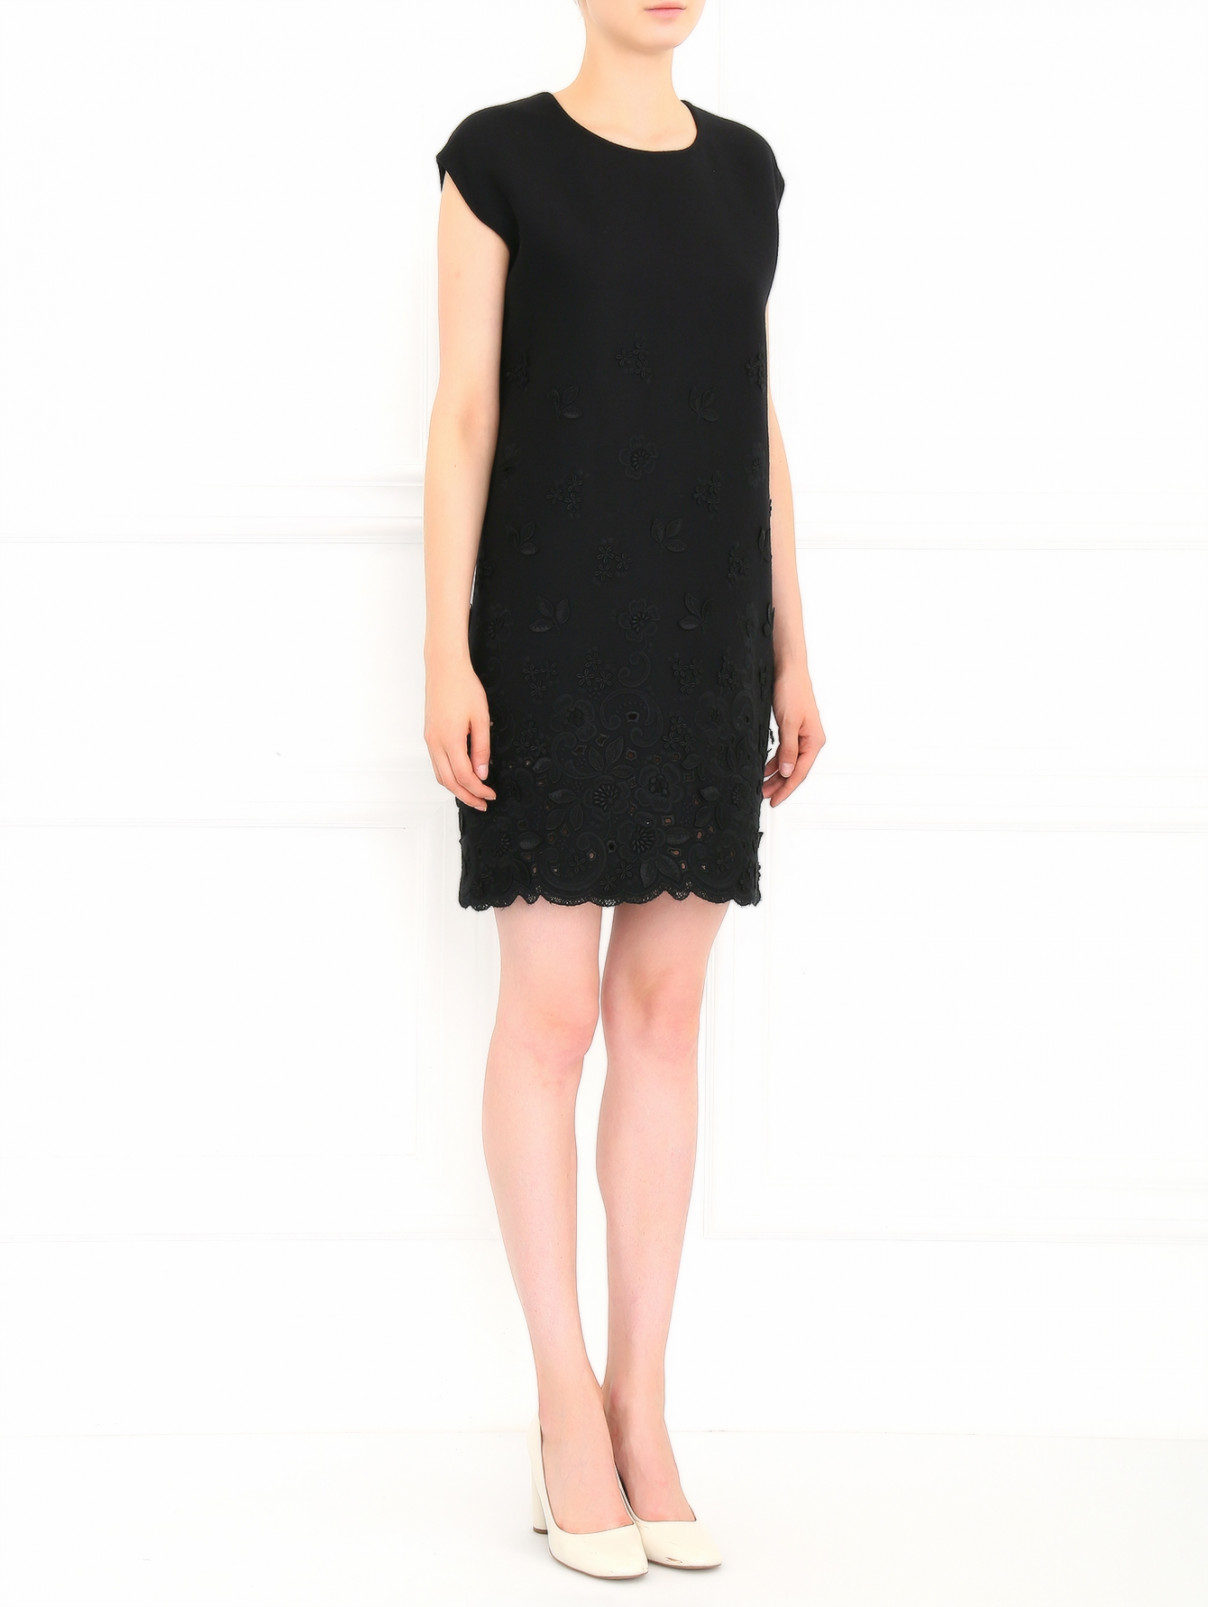 Платье из шерсти с декоративной вышивкой Ermanno Scervino  –  Модель Общий вид  – Цвет:  Черный